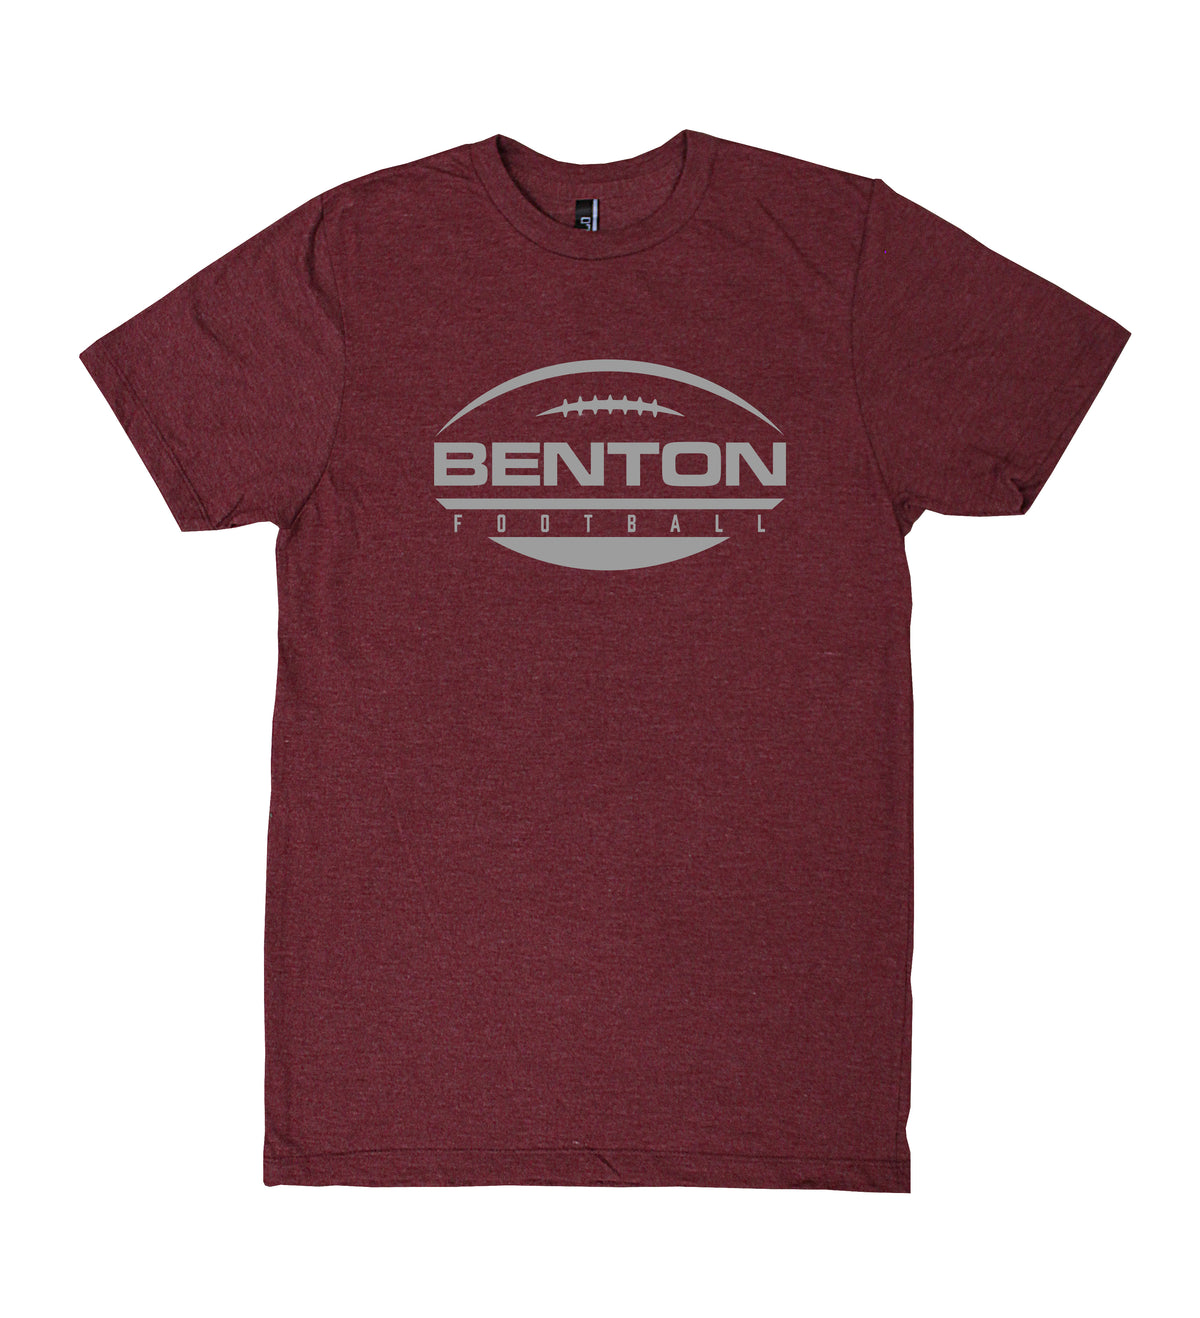 Benton Football T-Shirt